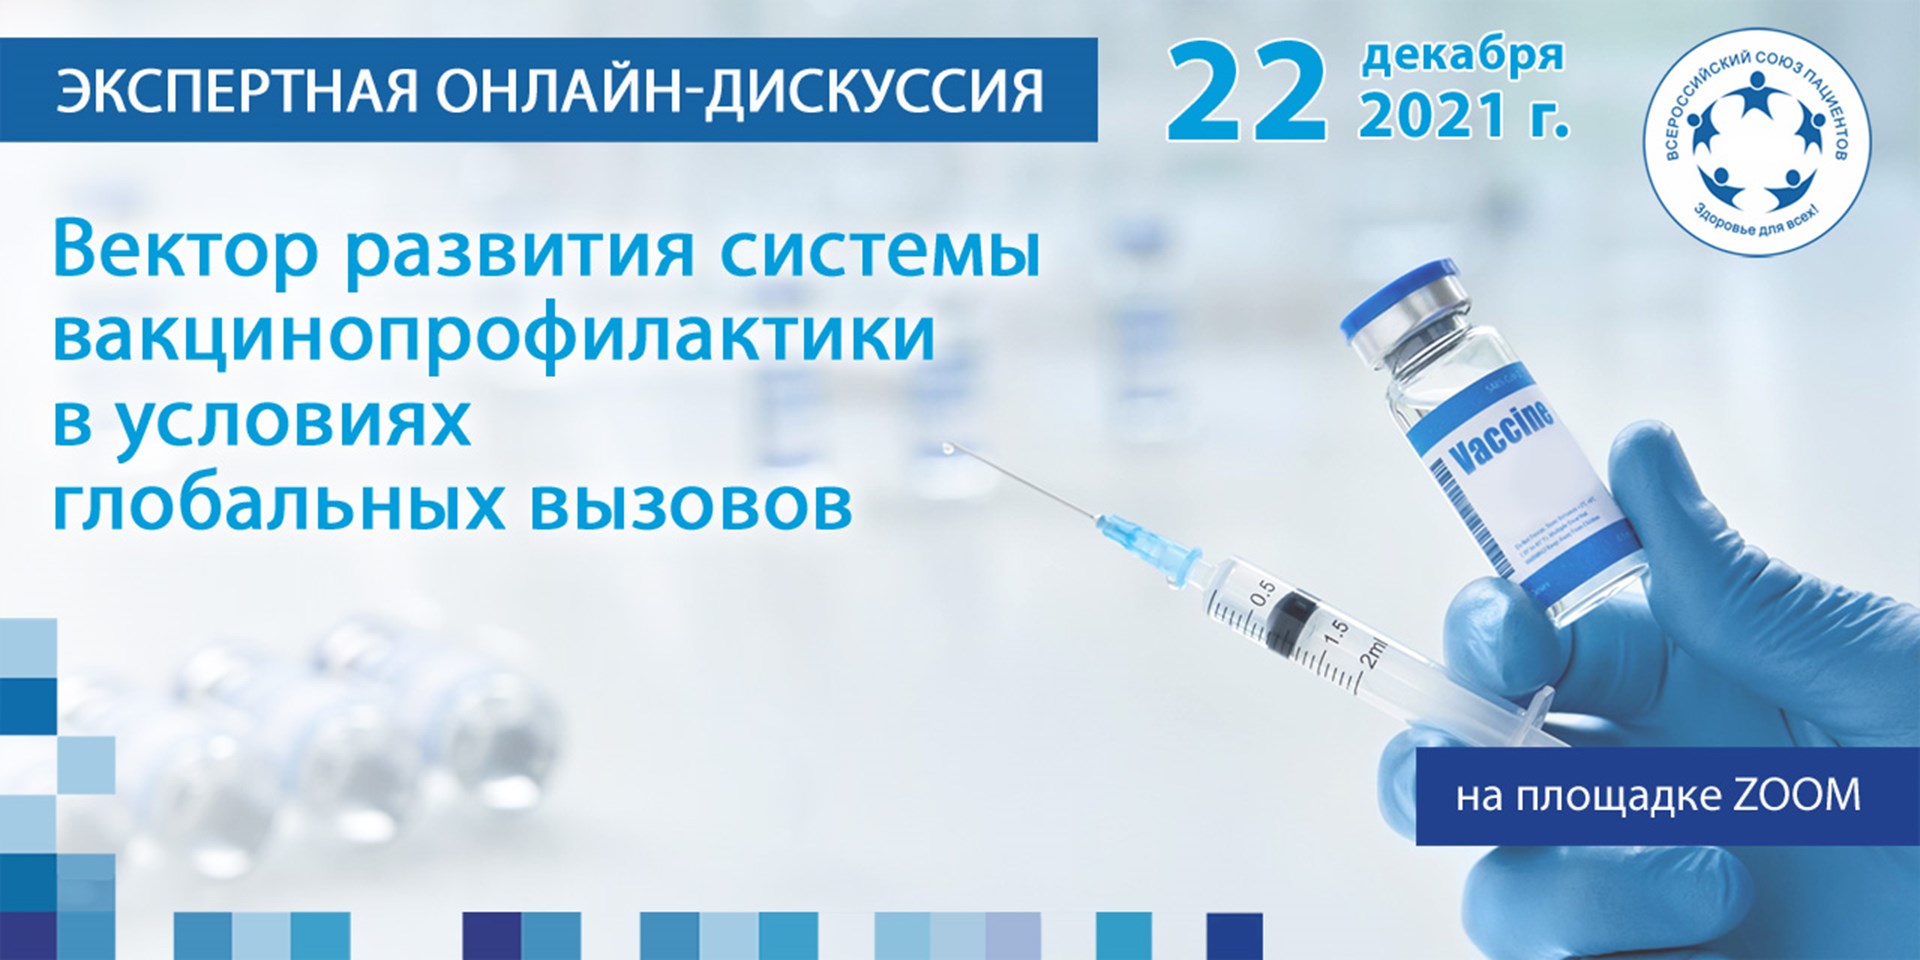 Москва. 22 декабря - онлайн-дискуссия «Каким будет вектор развития иммунопрофилактики в России в 2022 году»